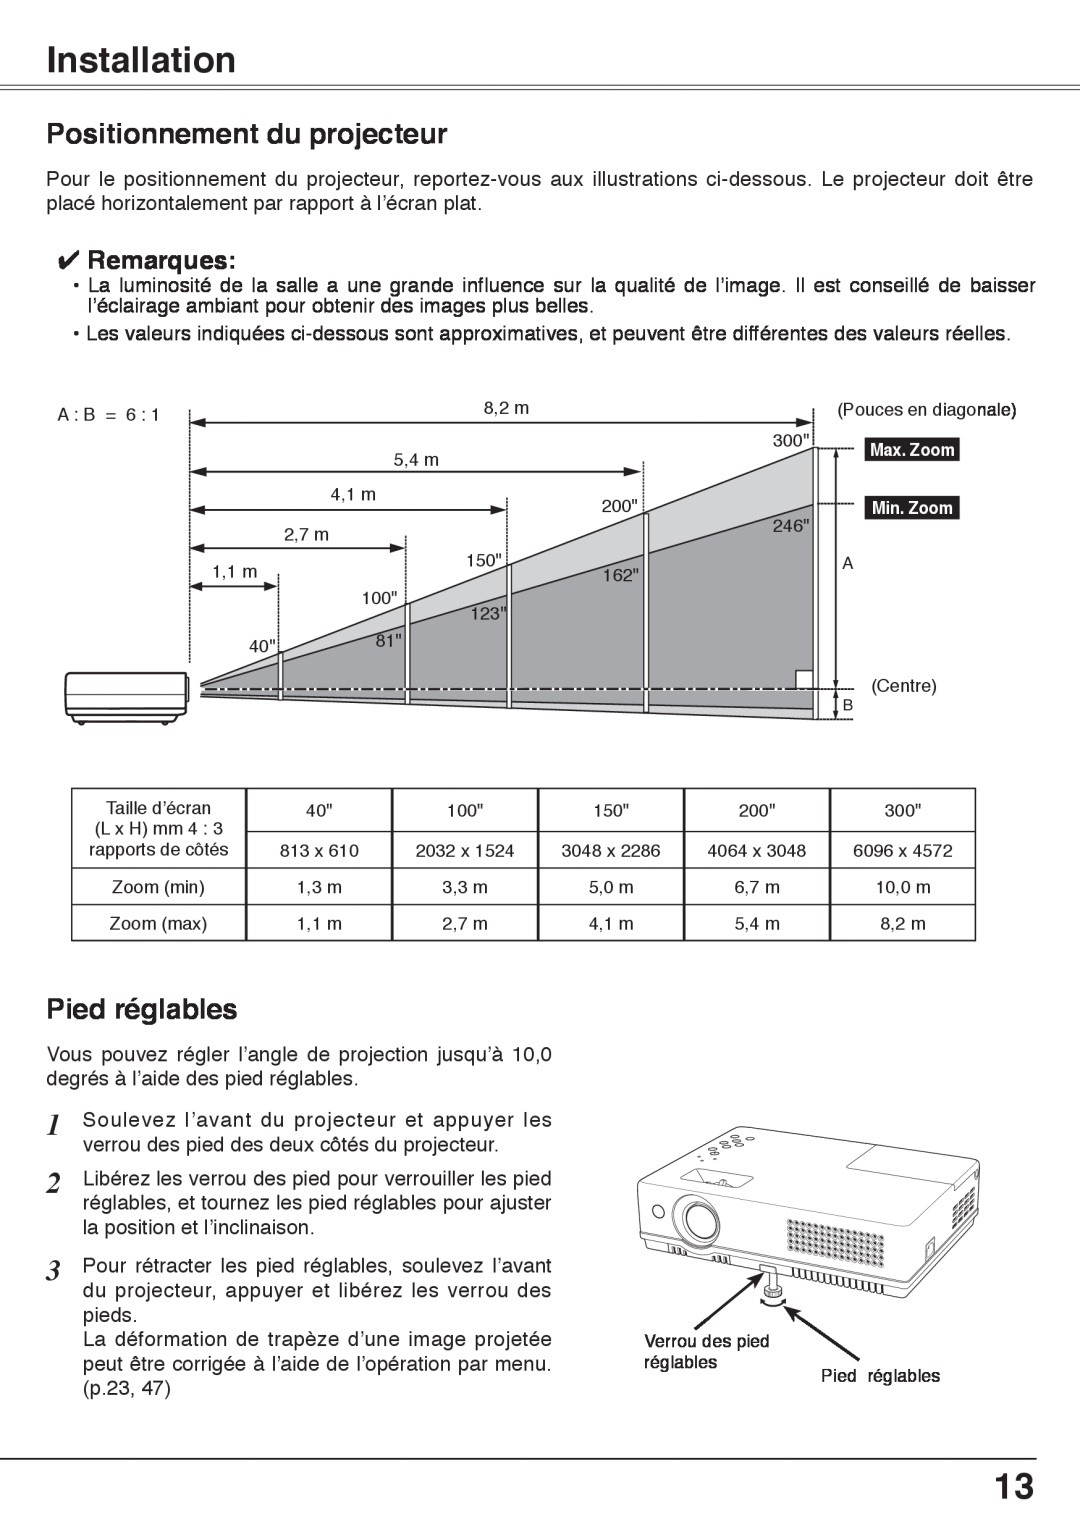 Fisher PLC-XW60 manual Installation, Positionnement du projecteur, Pied réglables, Remarques 